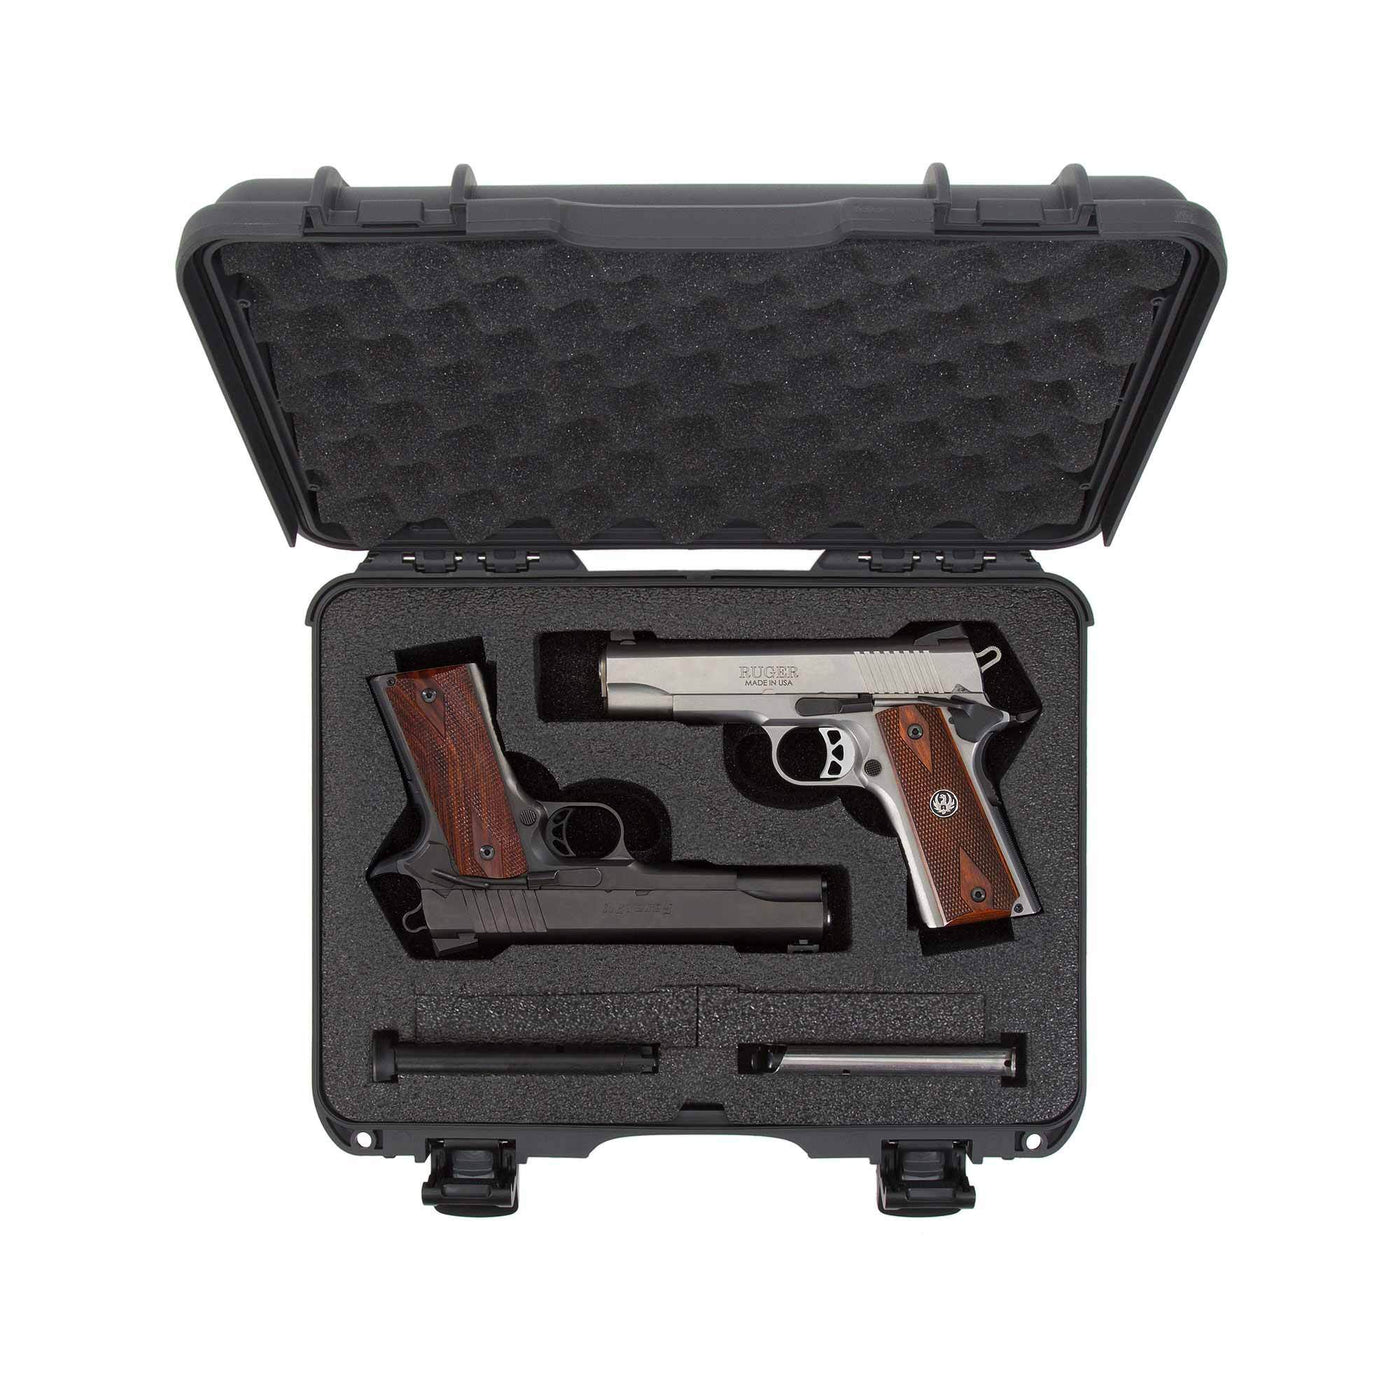 NANUK 910 2UP Classic Gun valise-Fusil valise-Tan-NANUK